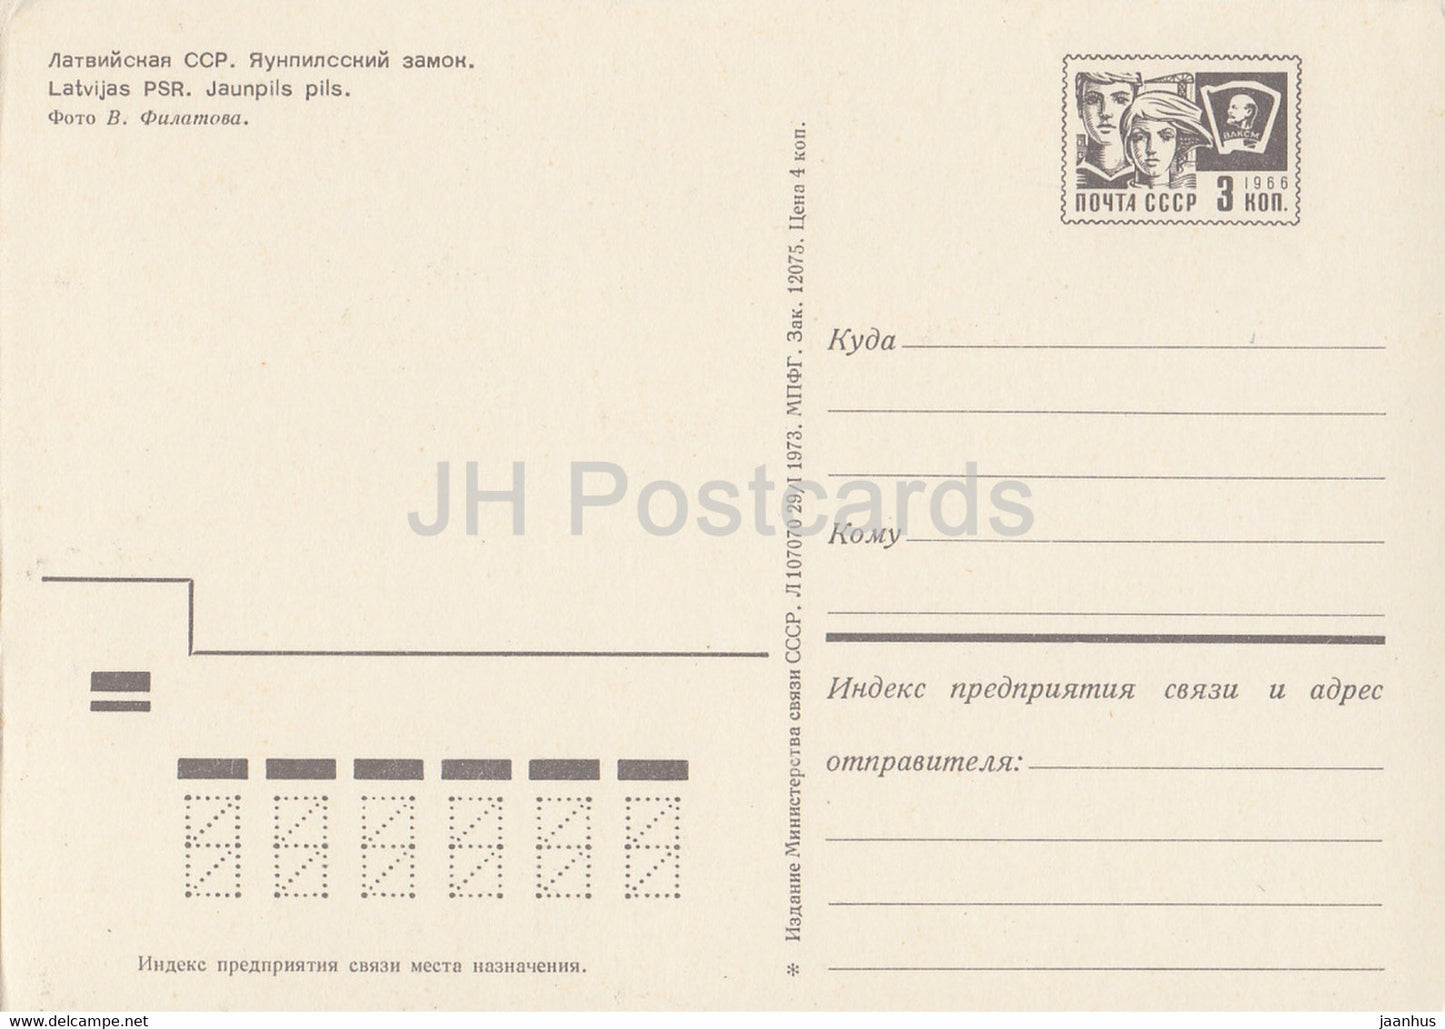 Jaunpils castle - postal stationery - 1973 - Latvia USSR - unused